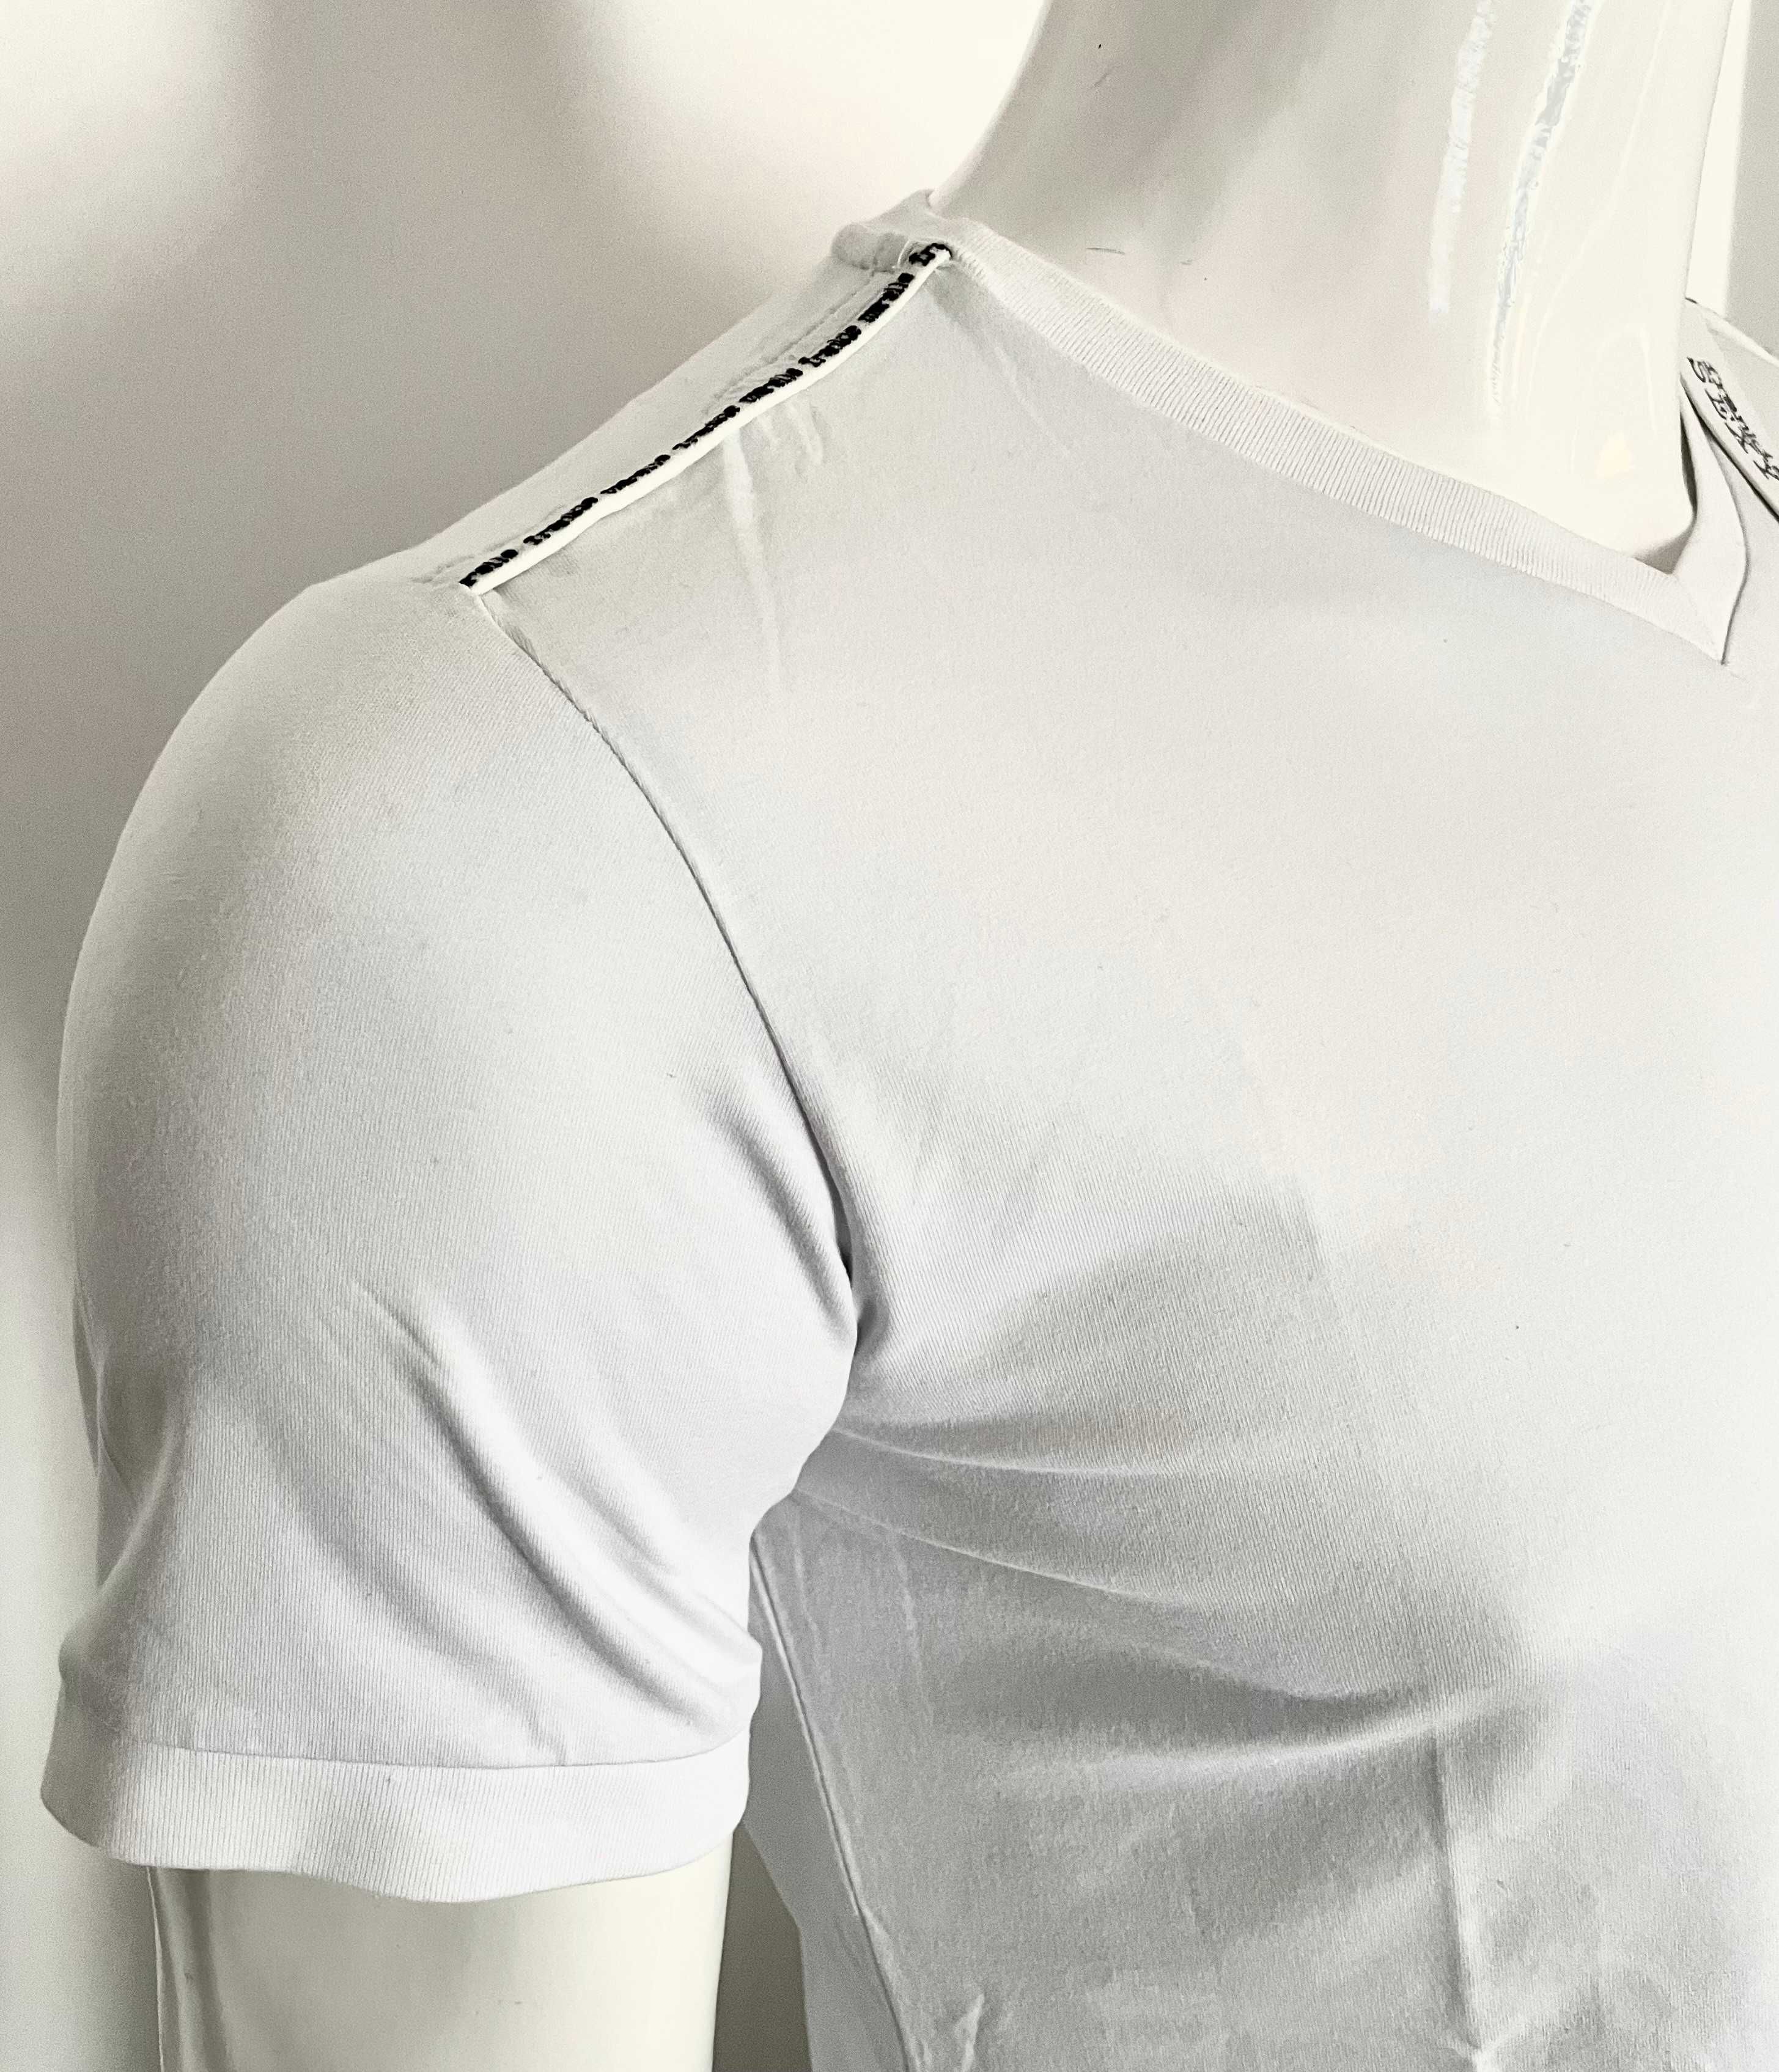 Oryginalny, męski t-shirt włoskiego projektanta Frankie Morello